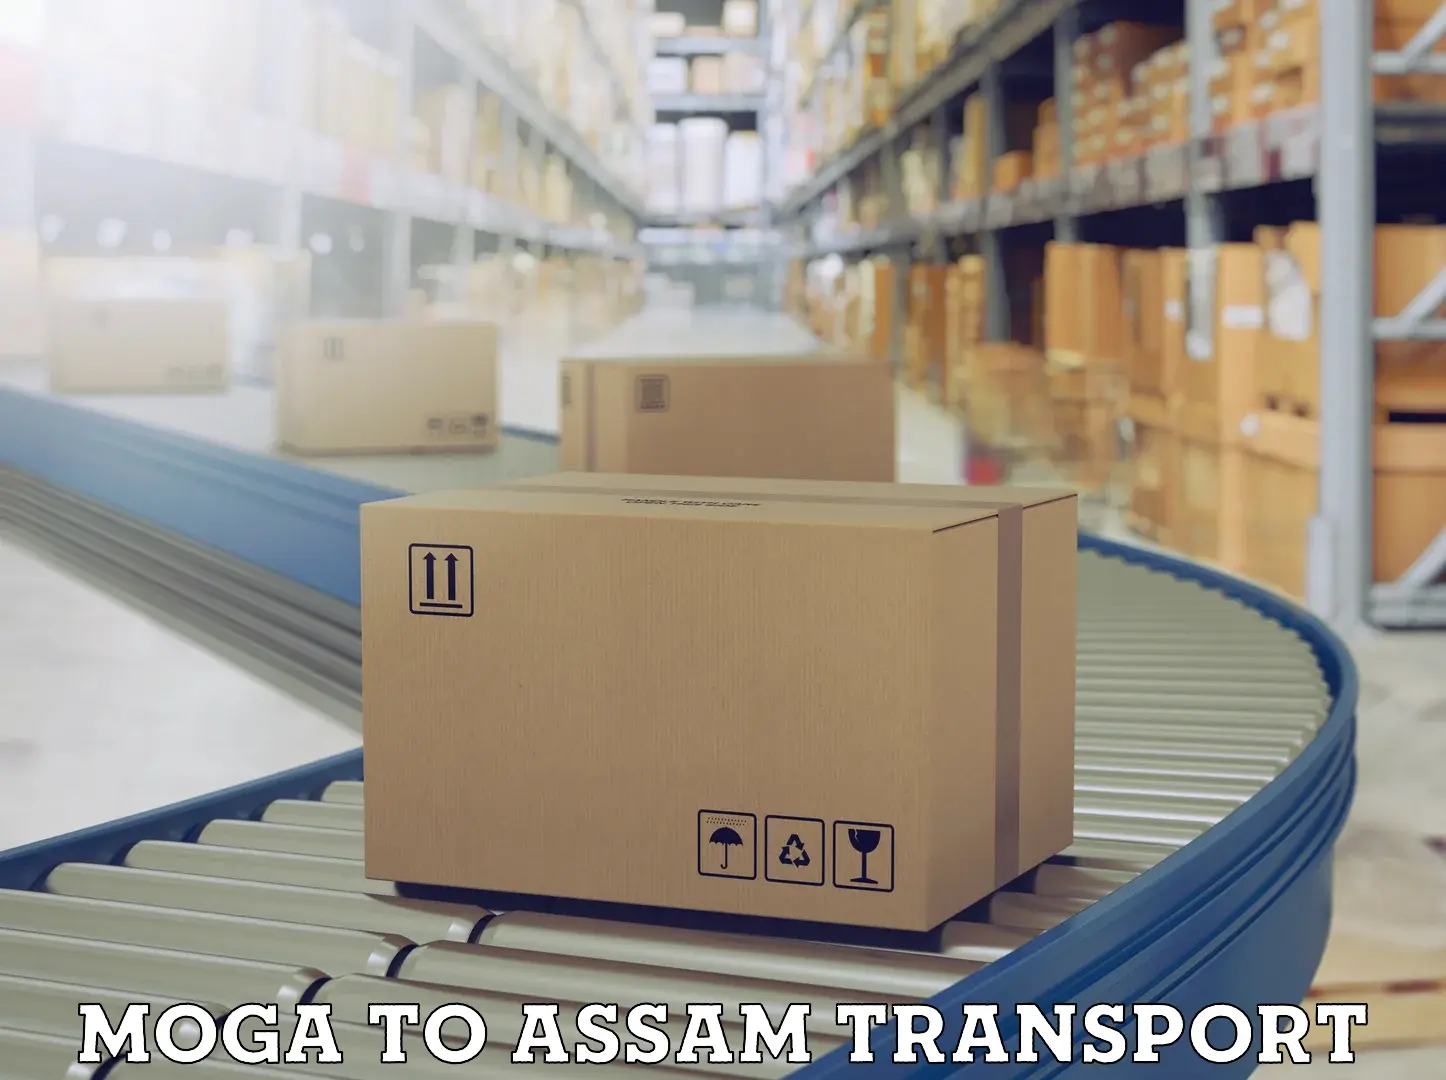 Daily parcel service transport Moga to Assam University Silchar